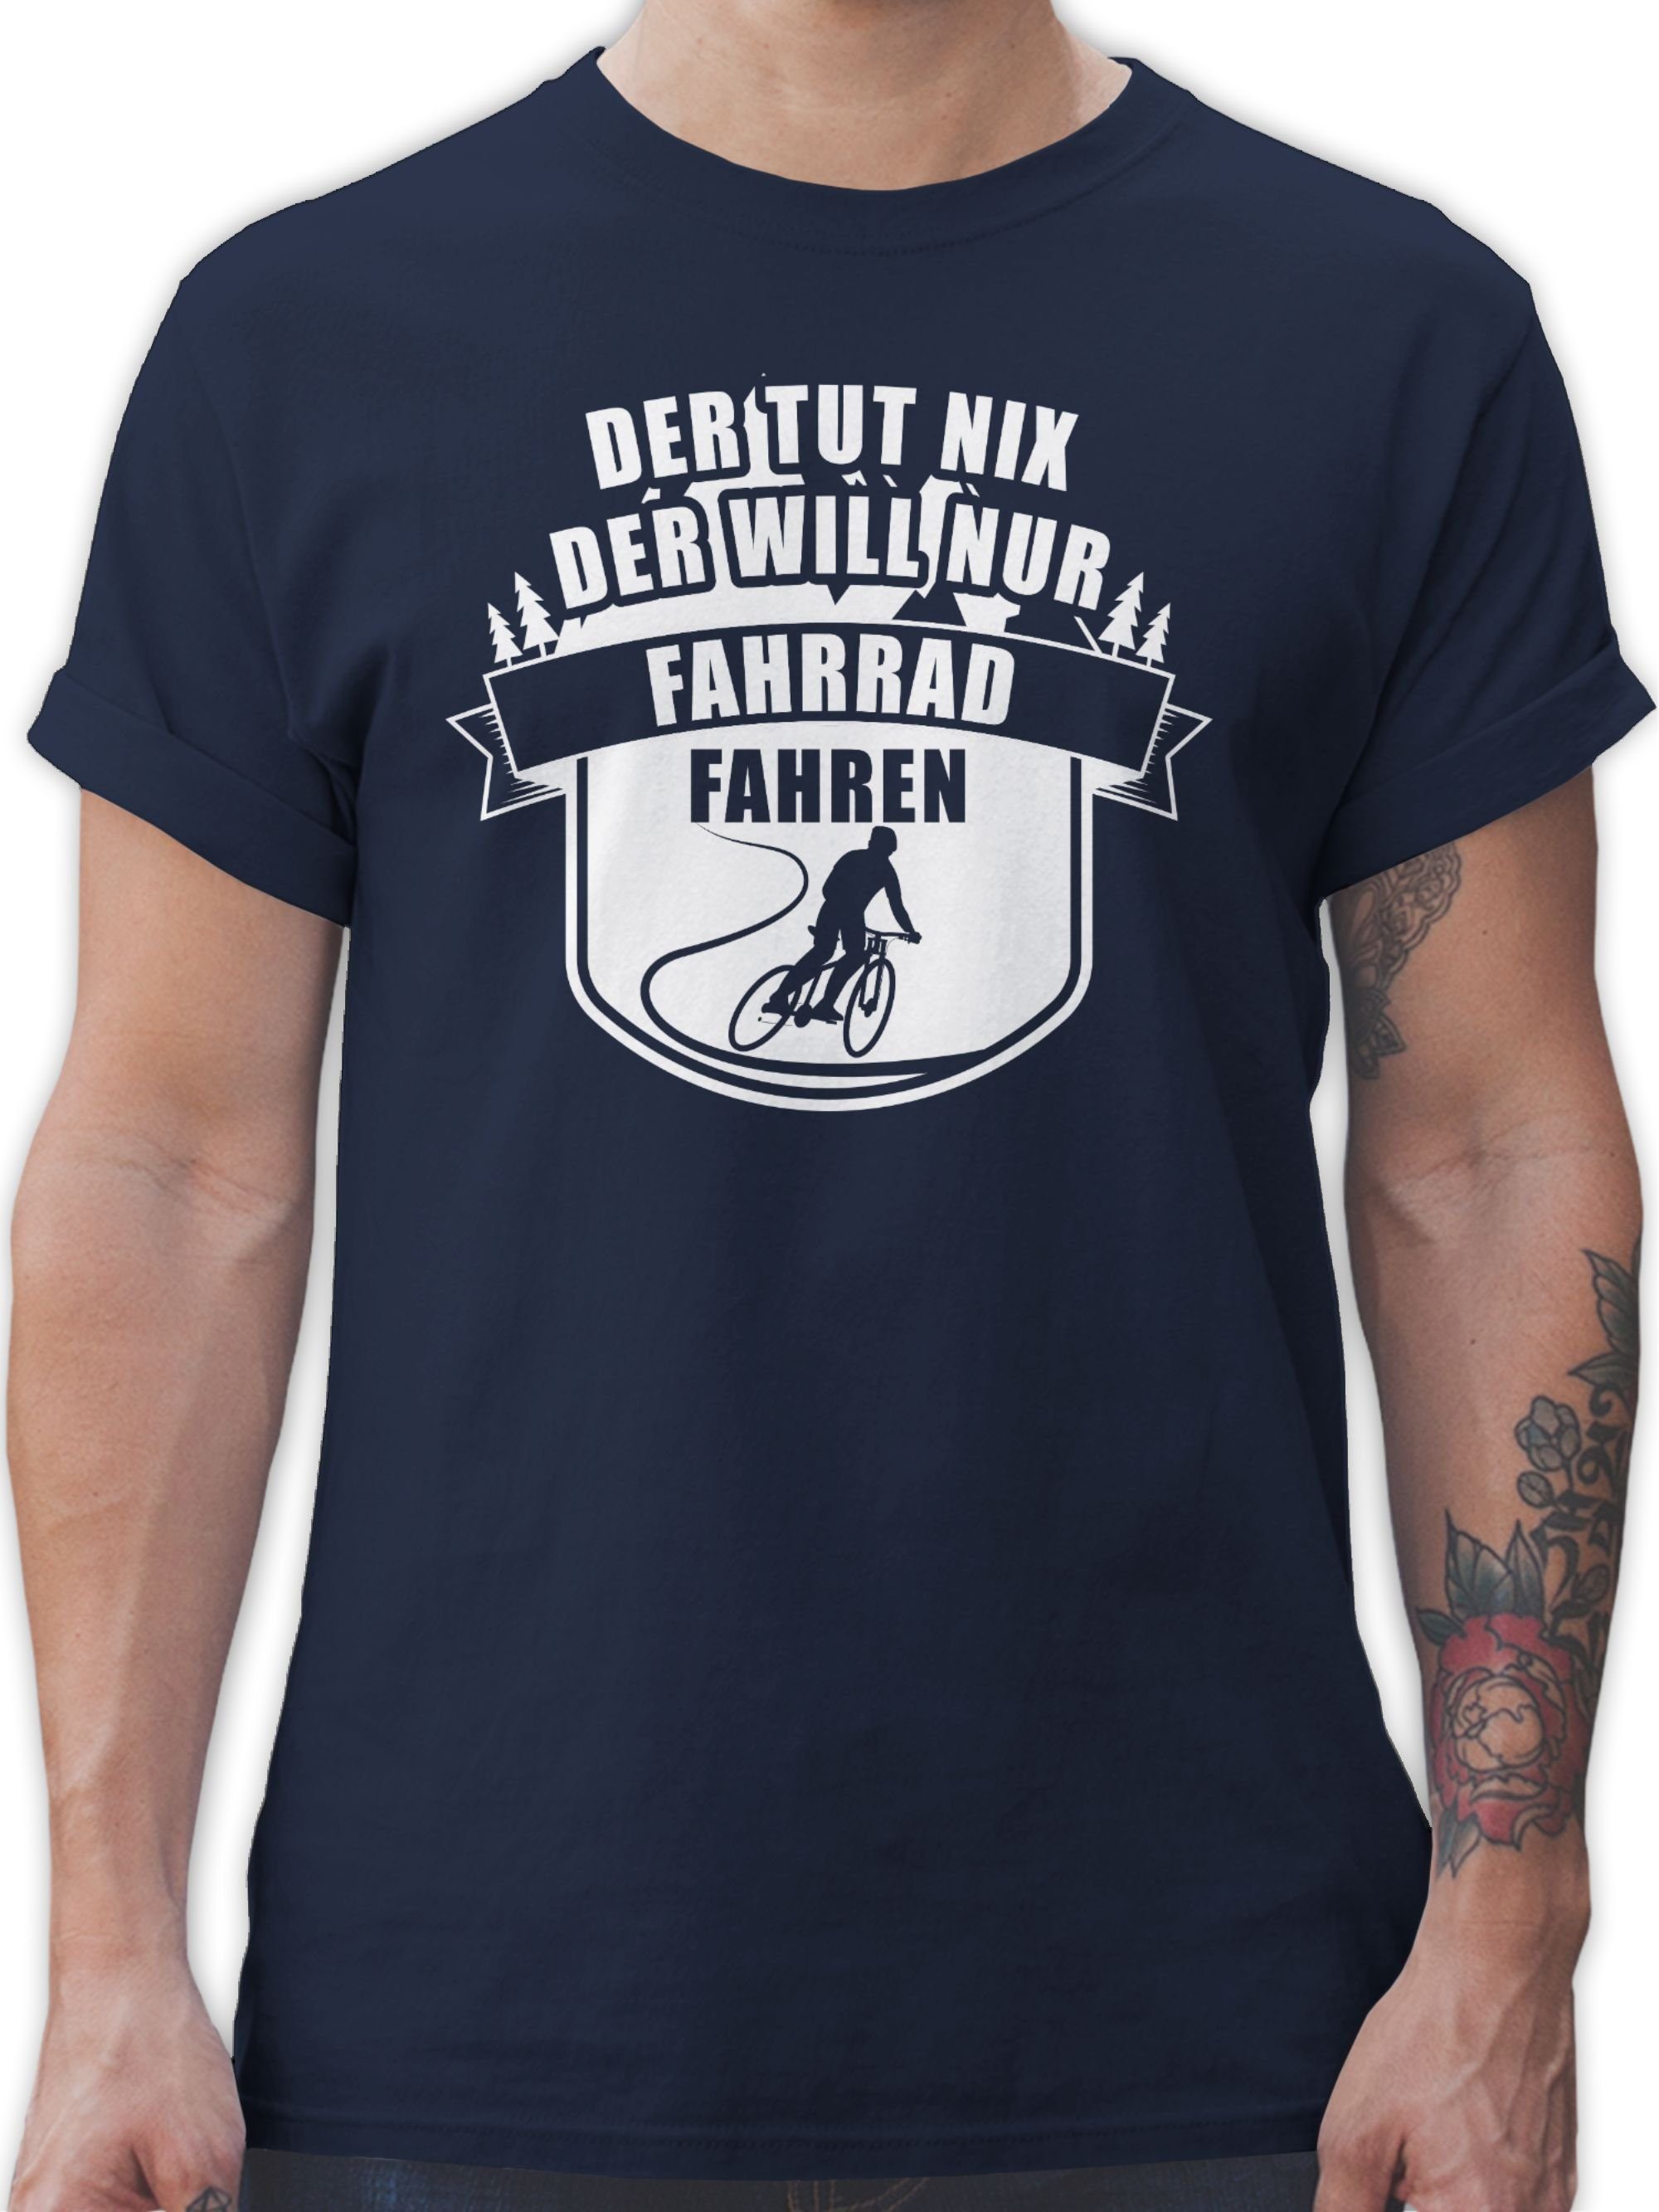 Shirtracer T-Shirt Der tut nix der will nur Fahrradfahren Sprüche Statement mit Spruch 2 Navy Blau